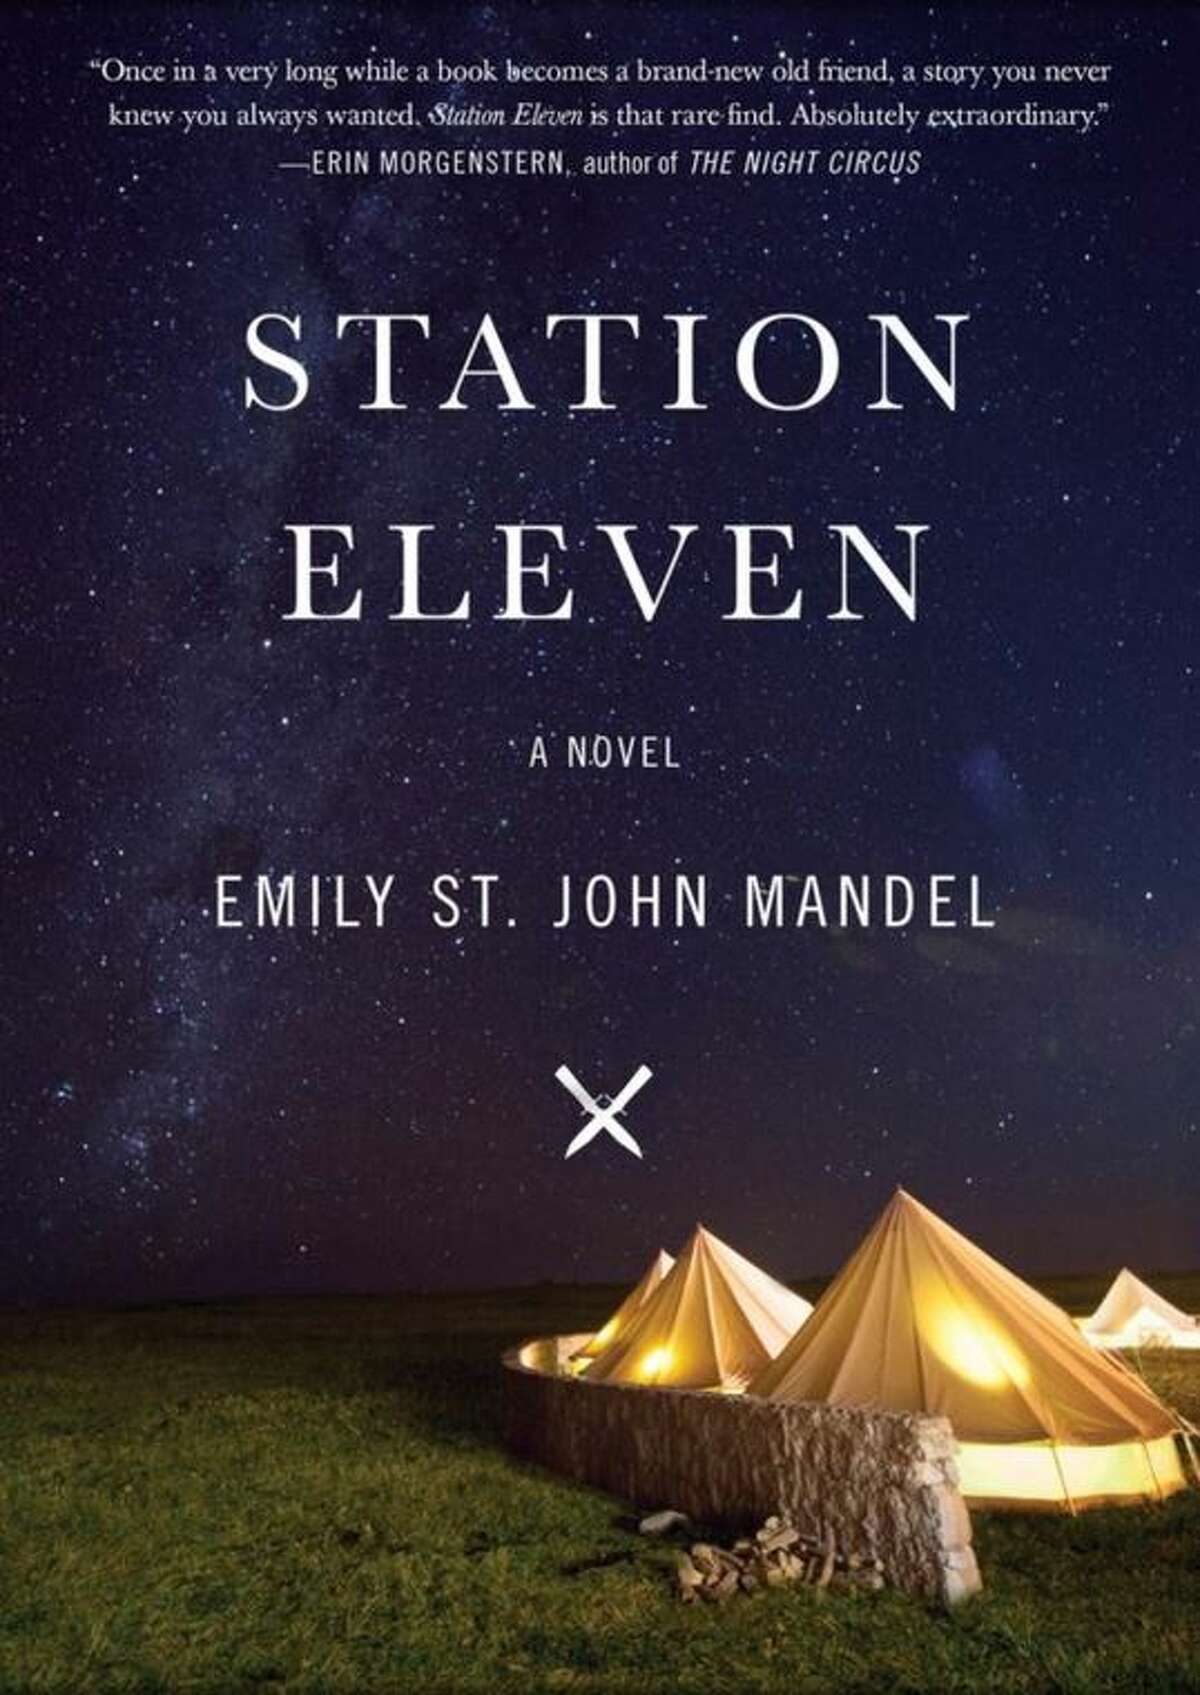 "Station Eleven"